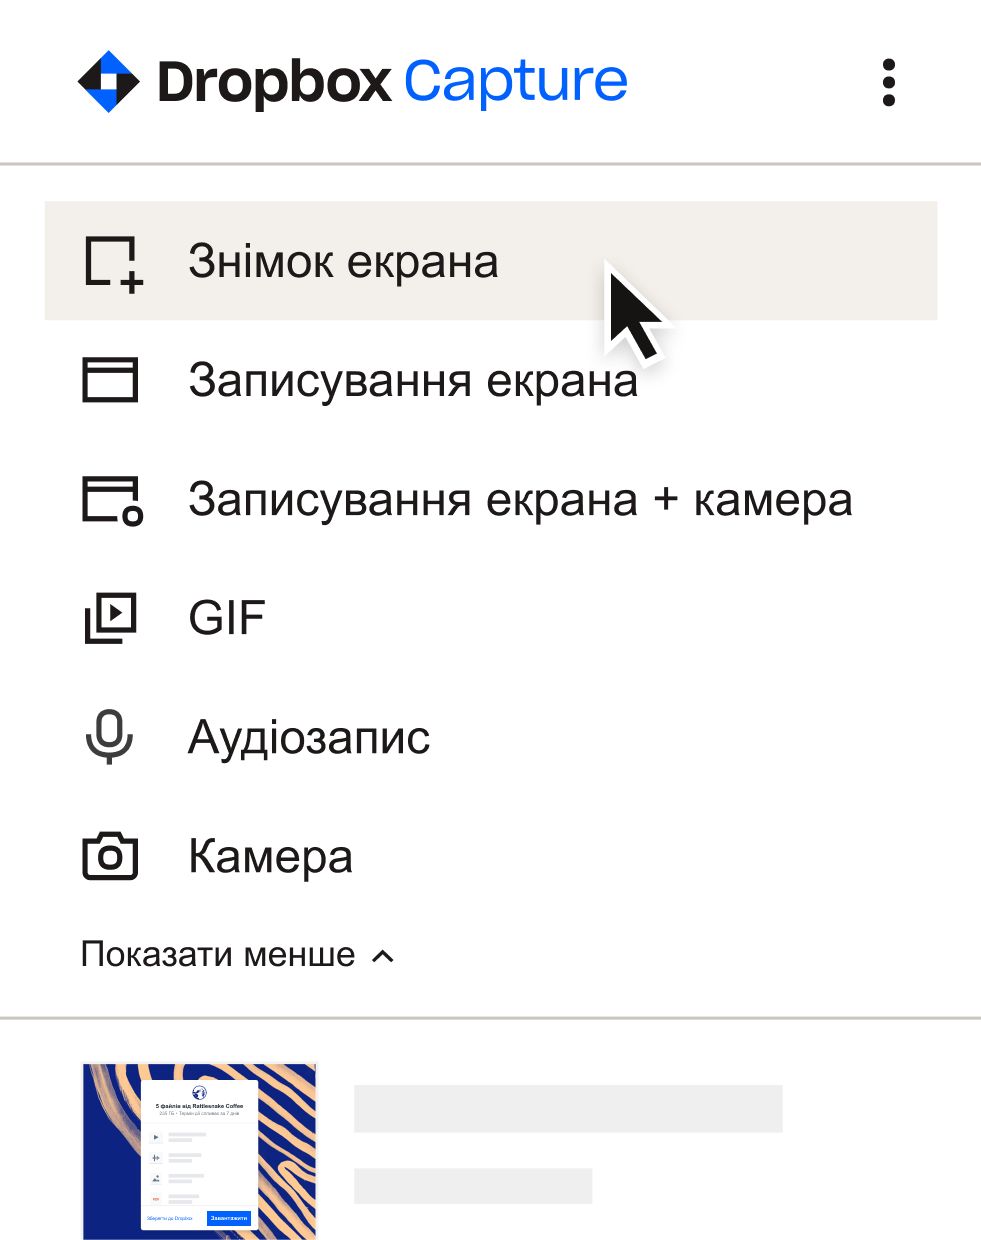 Користувач вибирає «знімок екрана» в меню «Запис»